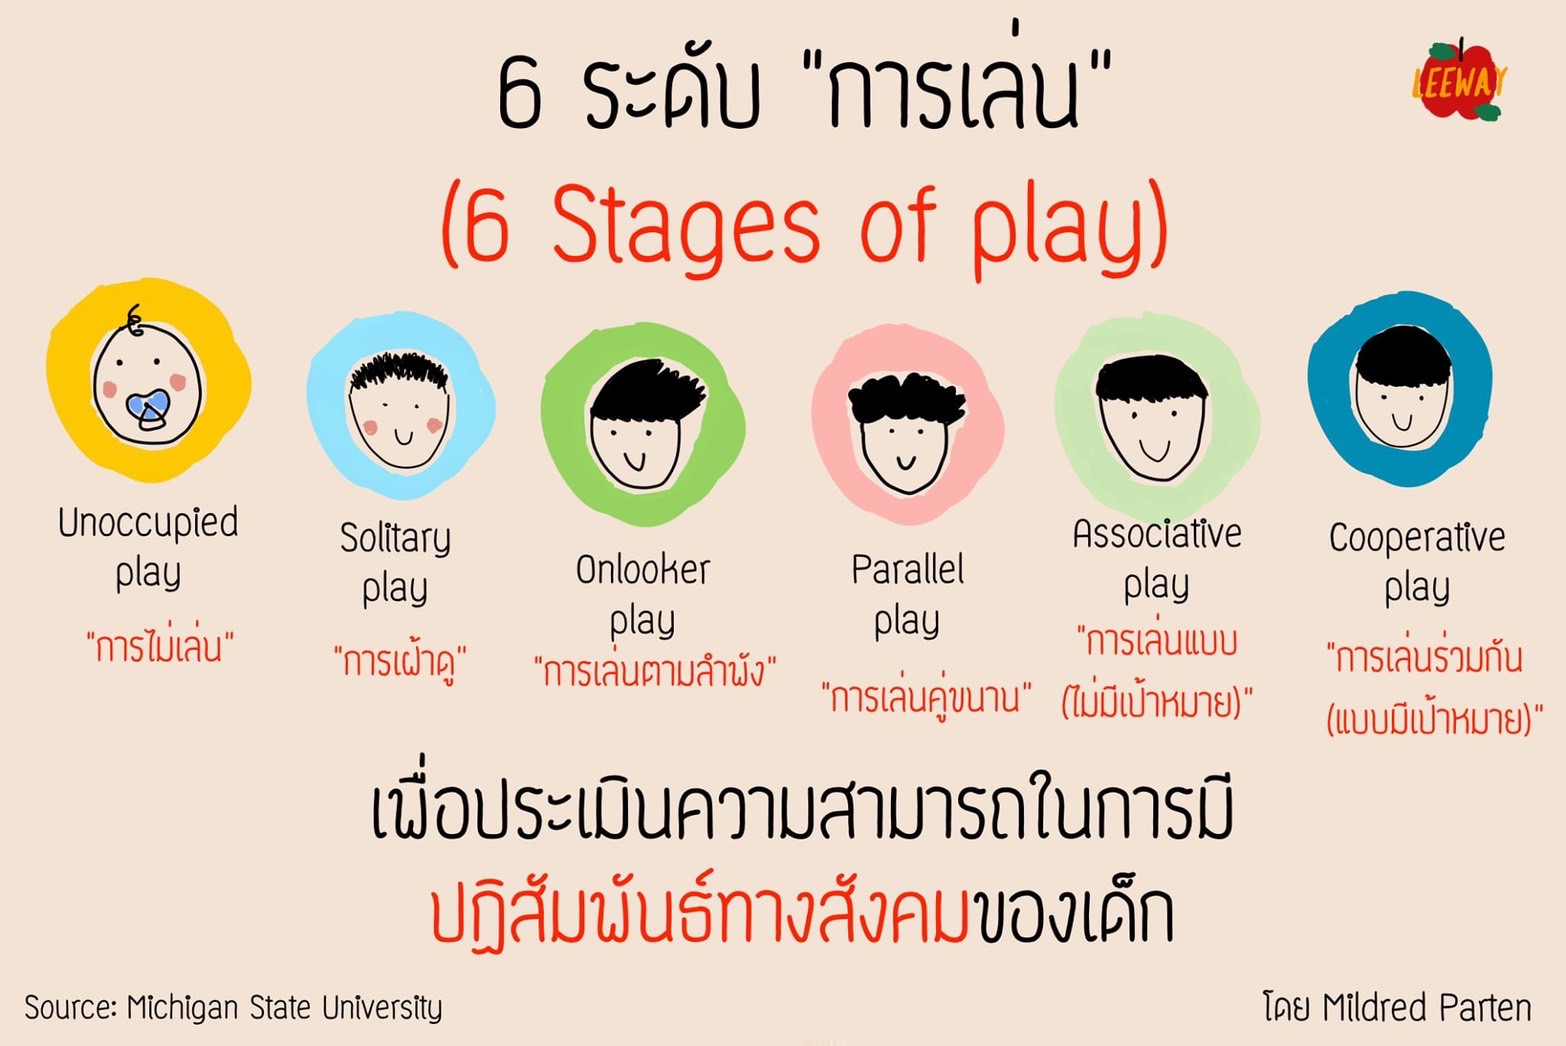 รวมพลังภาคีส่งเสริมเด็กเล่นอิสระ (Free Play) กระตุ้นพัฒนาการ สร้างทักษะชีวิตครอบคลุมทุกมิติ  thaihealth